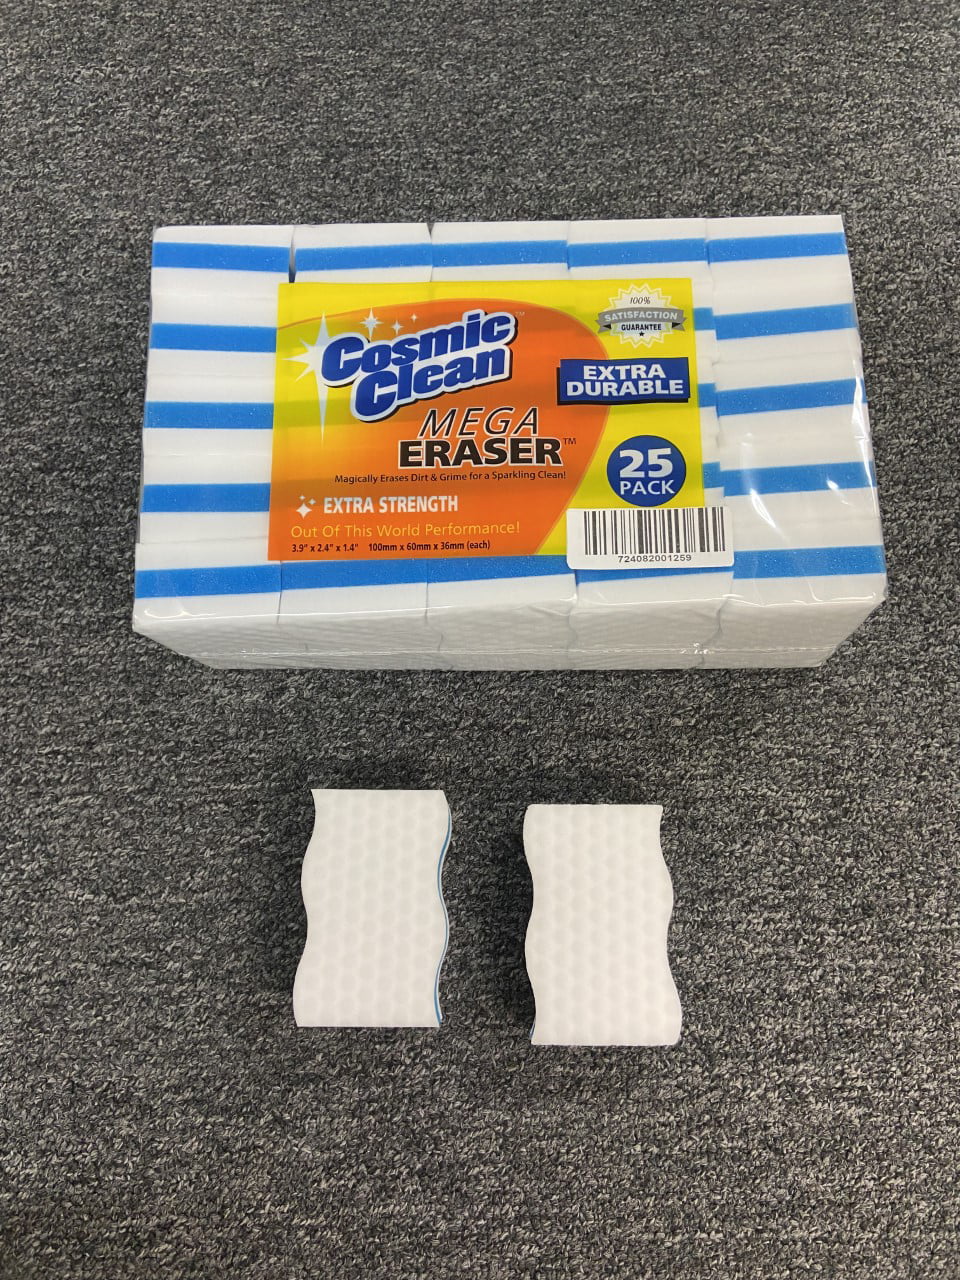 Cosmic Clean Mega Eraser Extra Durable Compressed 25 Pack Melamine Sponge 